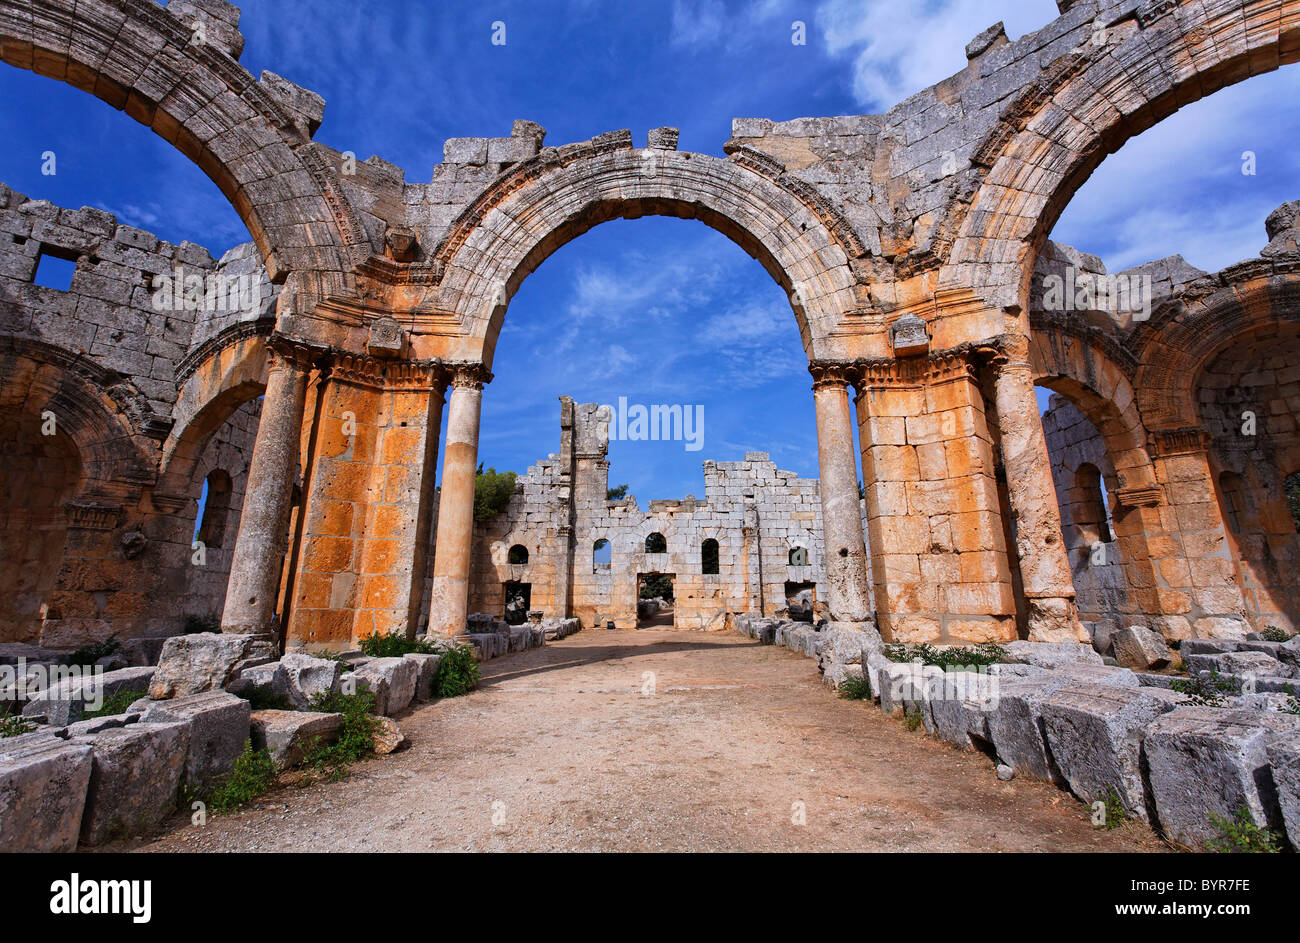 Les ruines de l'église de St Siméon, la Syrie Banque D'Images